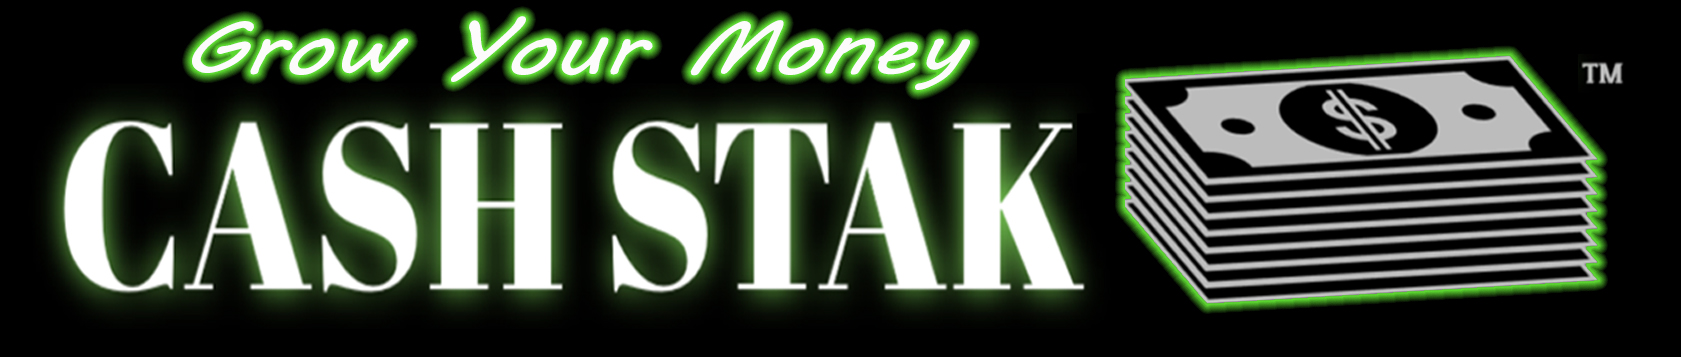 CashSTAK - GROW your MONEY!